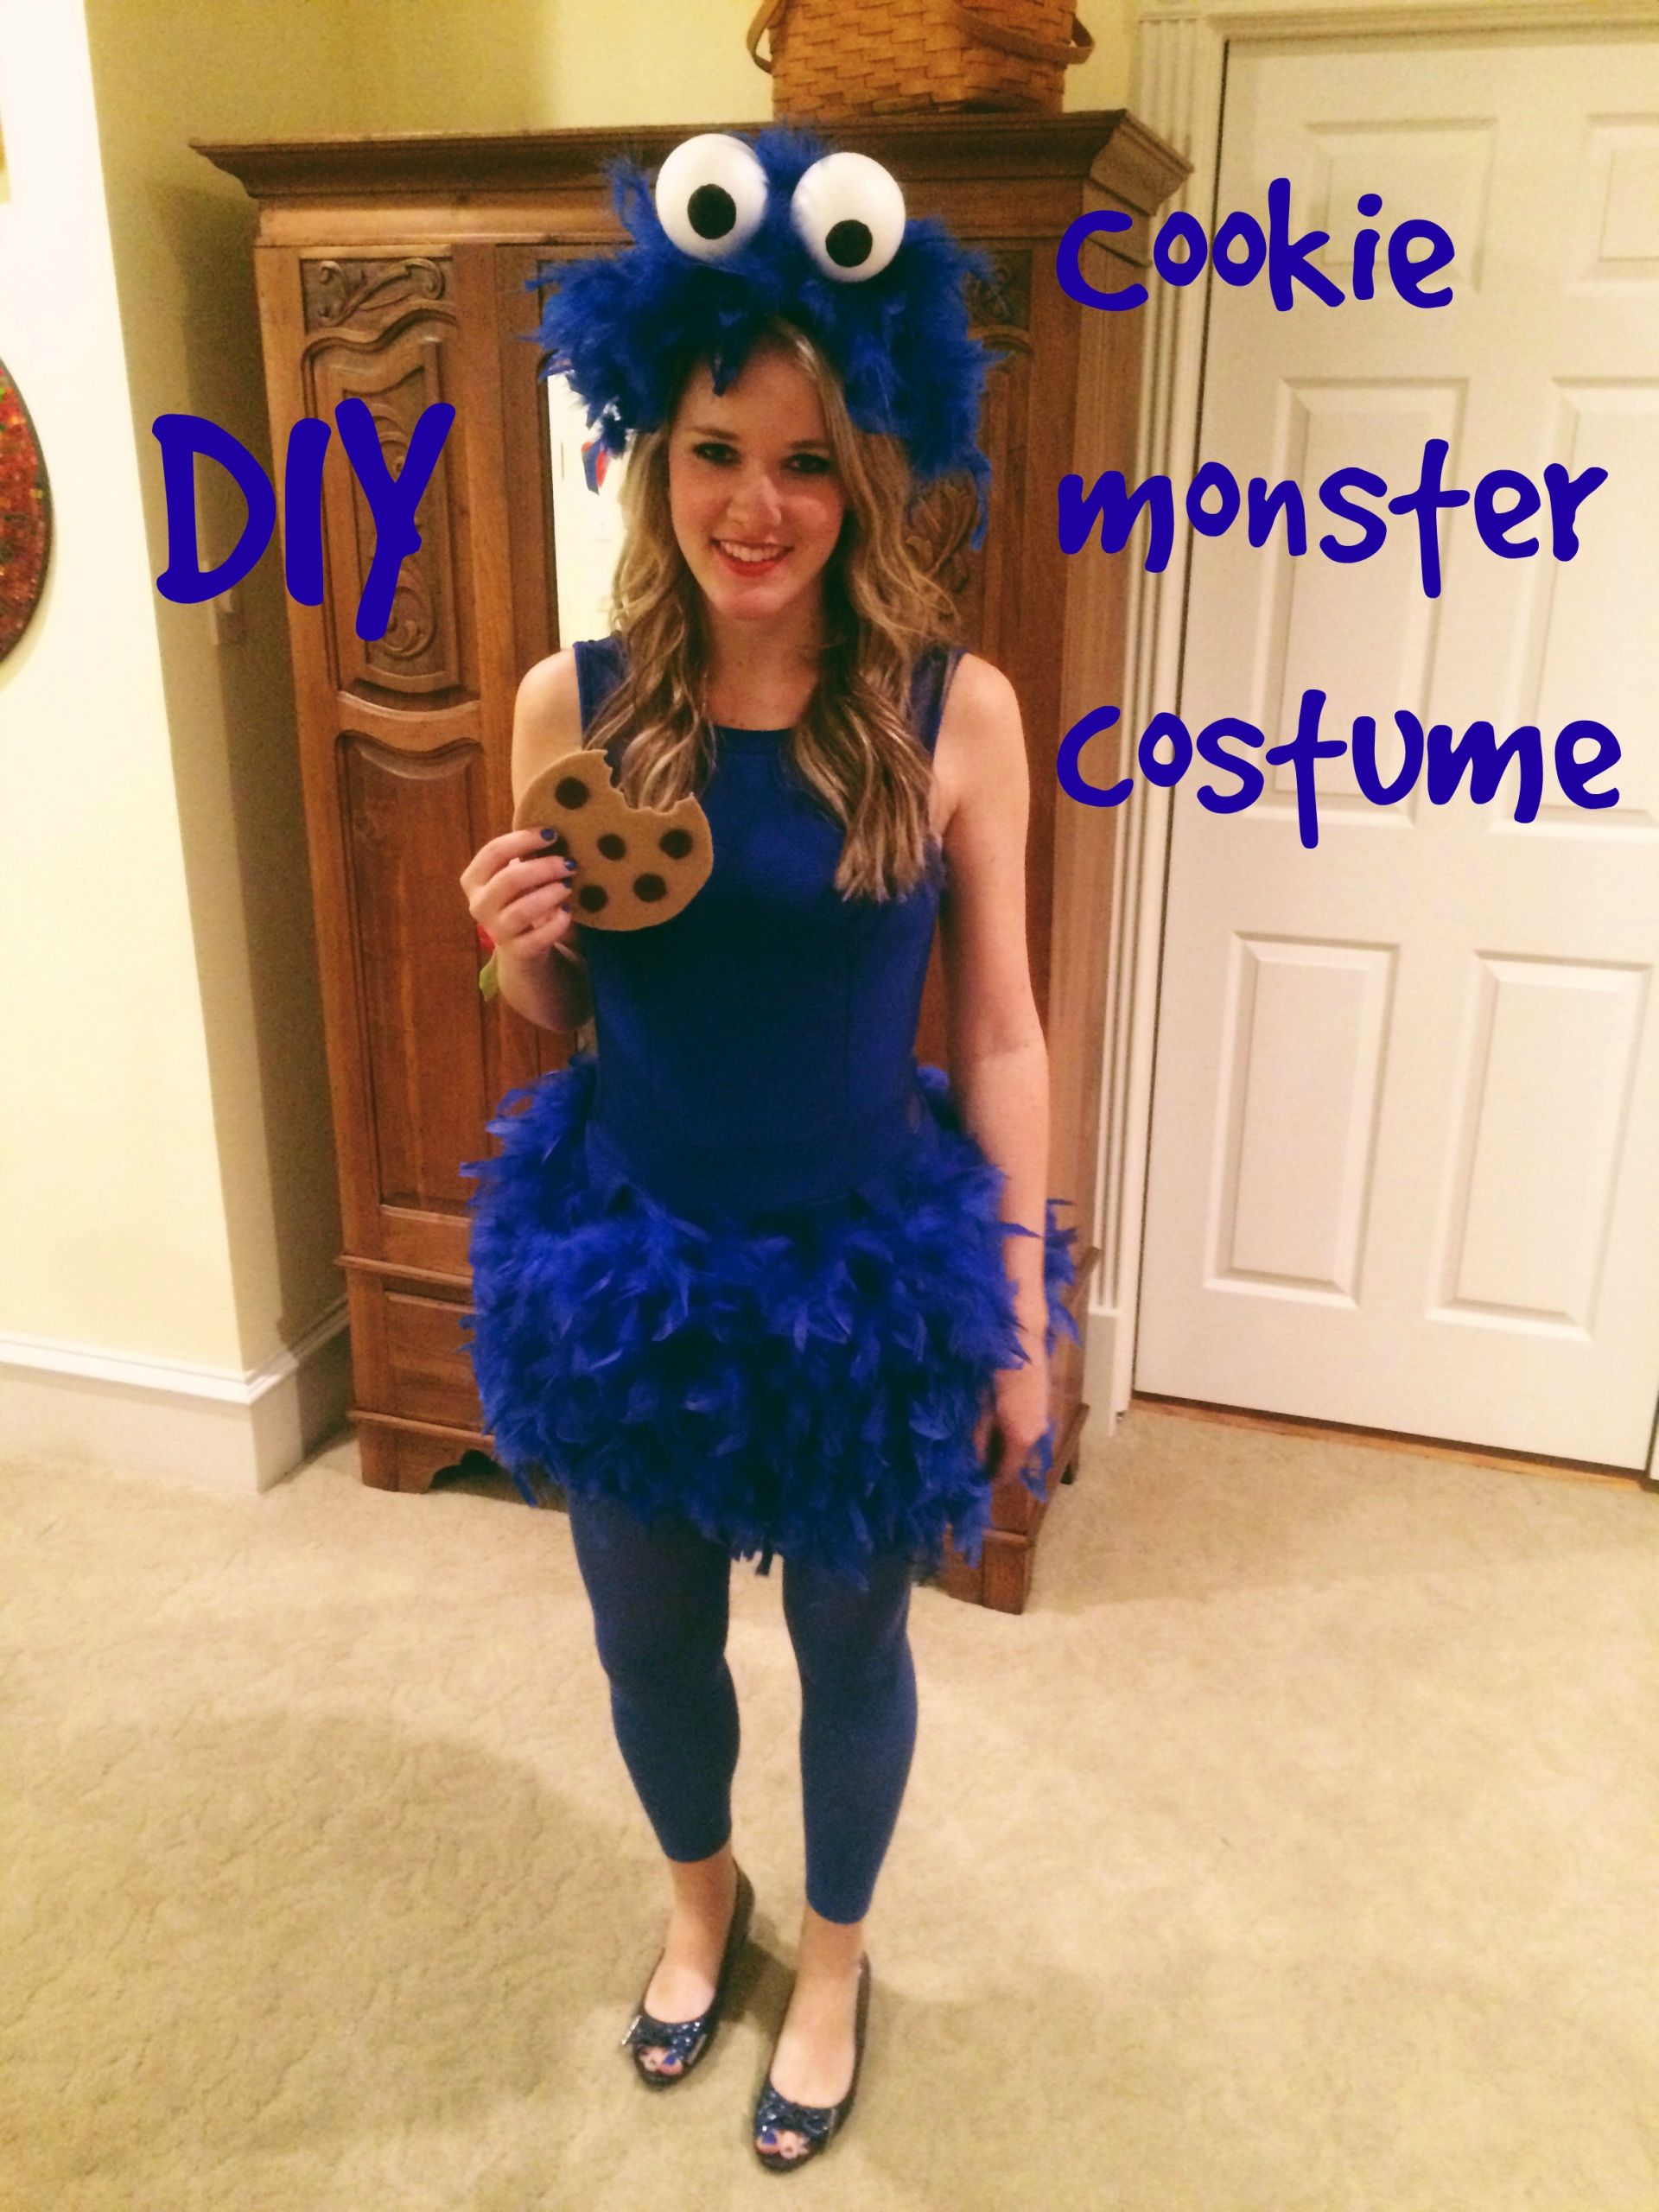 Cookie Monster Costume DIY
 DIY cookie monster costume